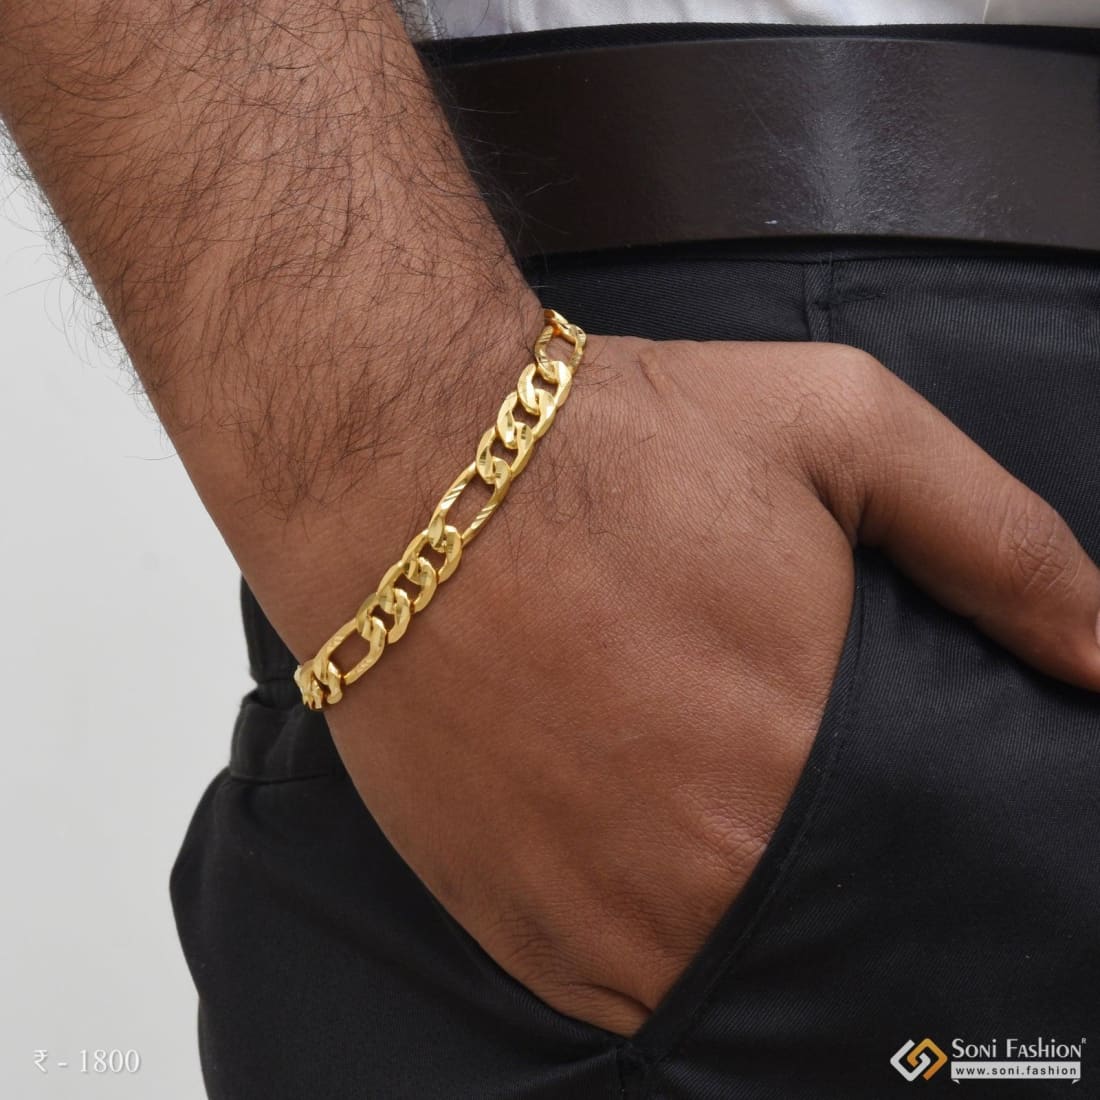 Buy Solid Gold Bracelet Men Online In India - Etsy India